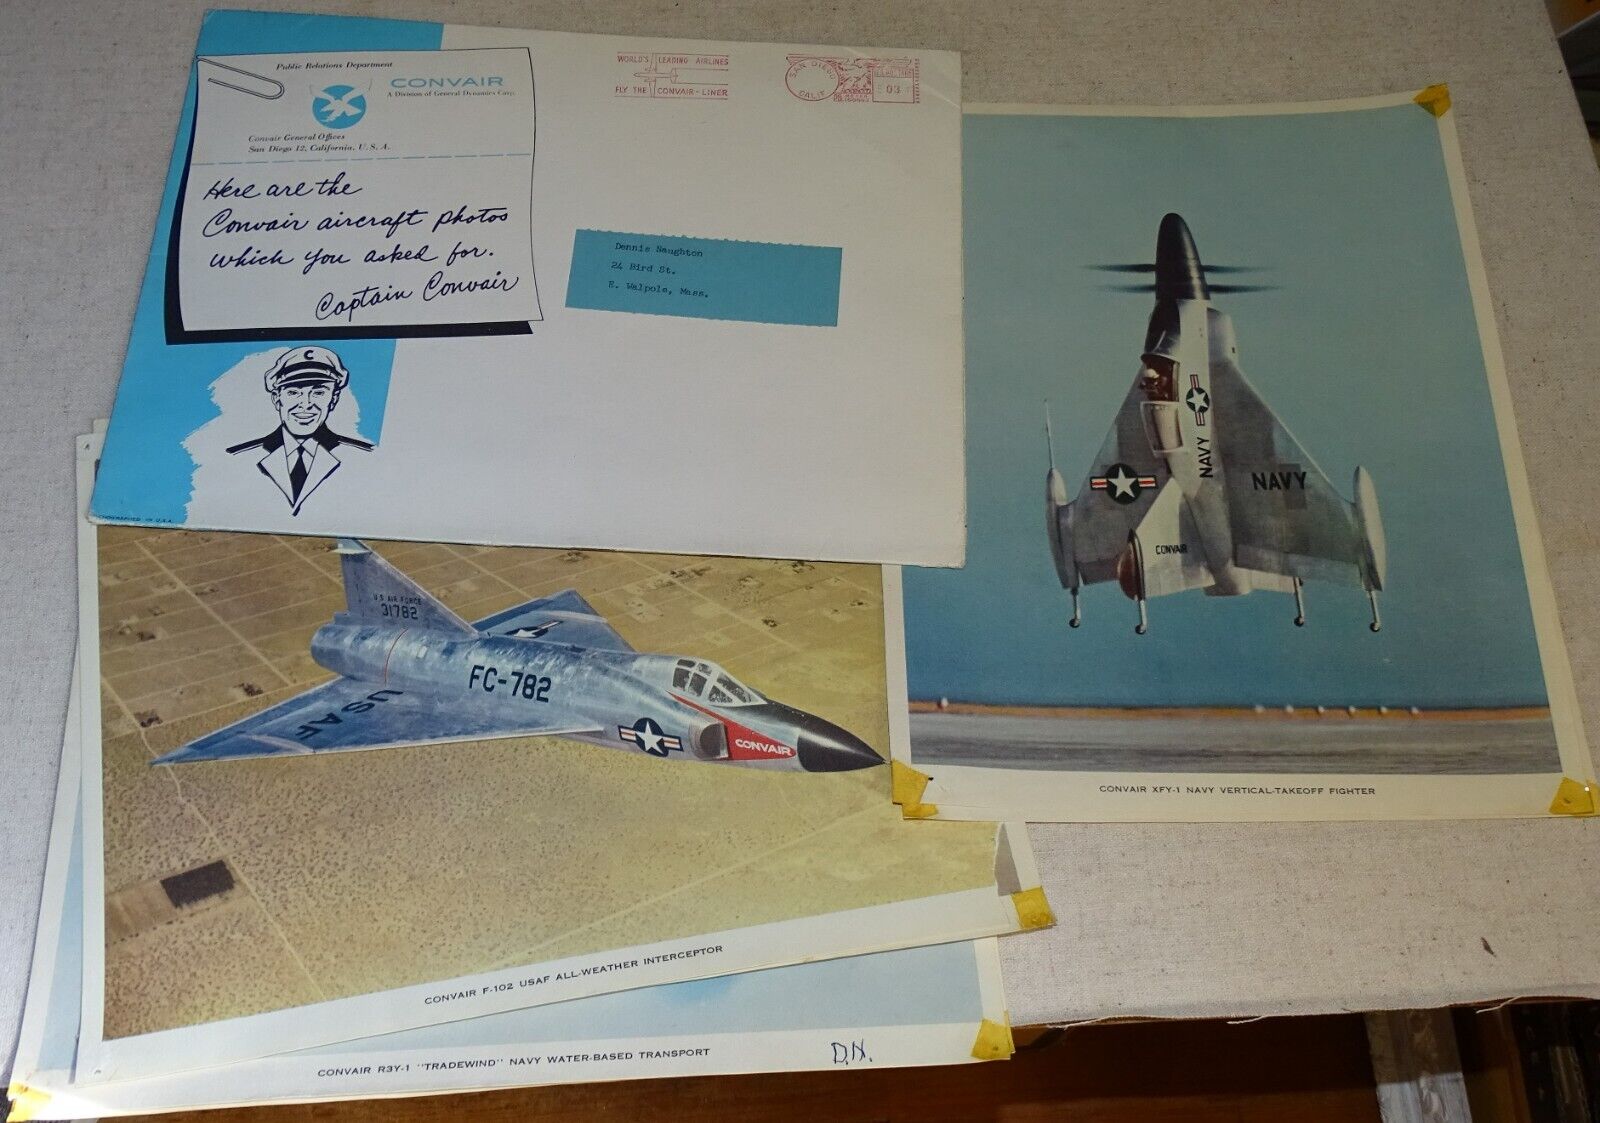 Convair Aircraft Photos in original card-stock mailer-folder (1950s ?)